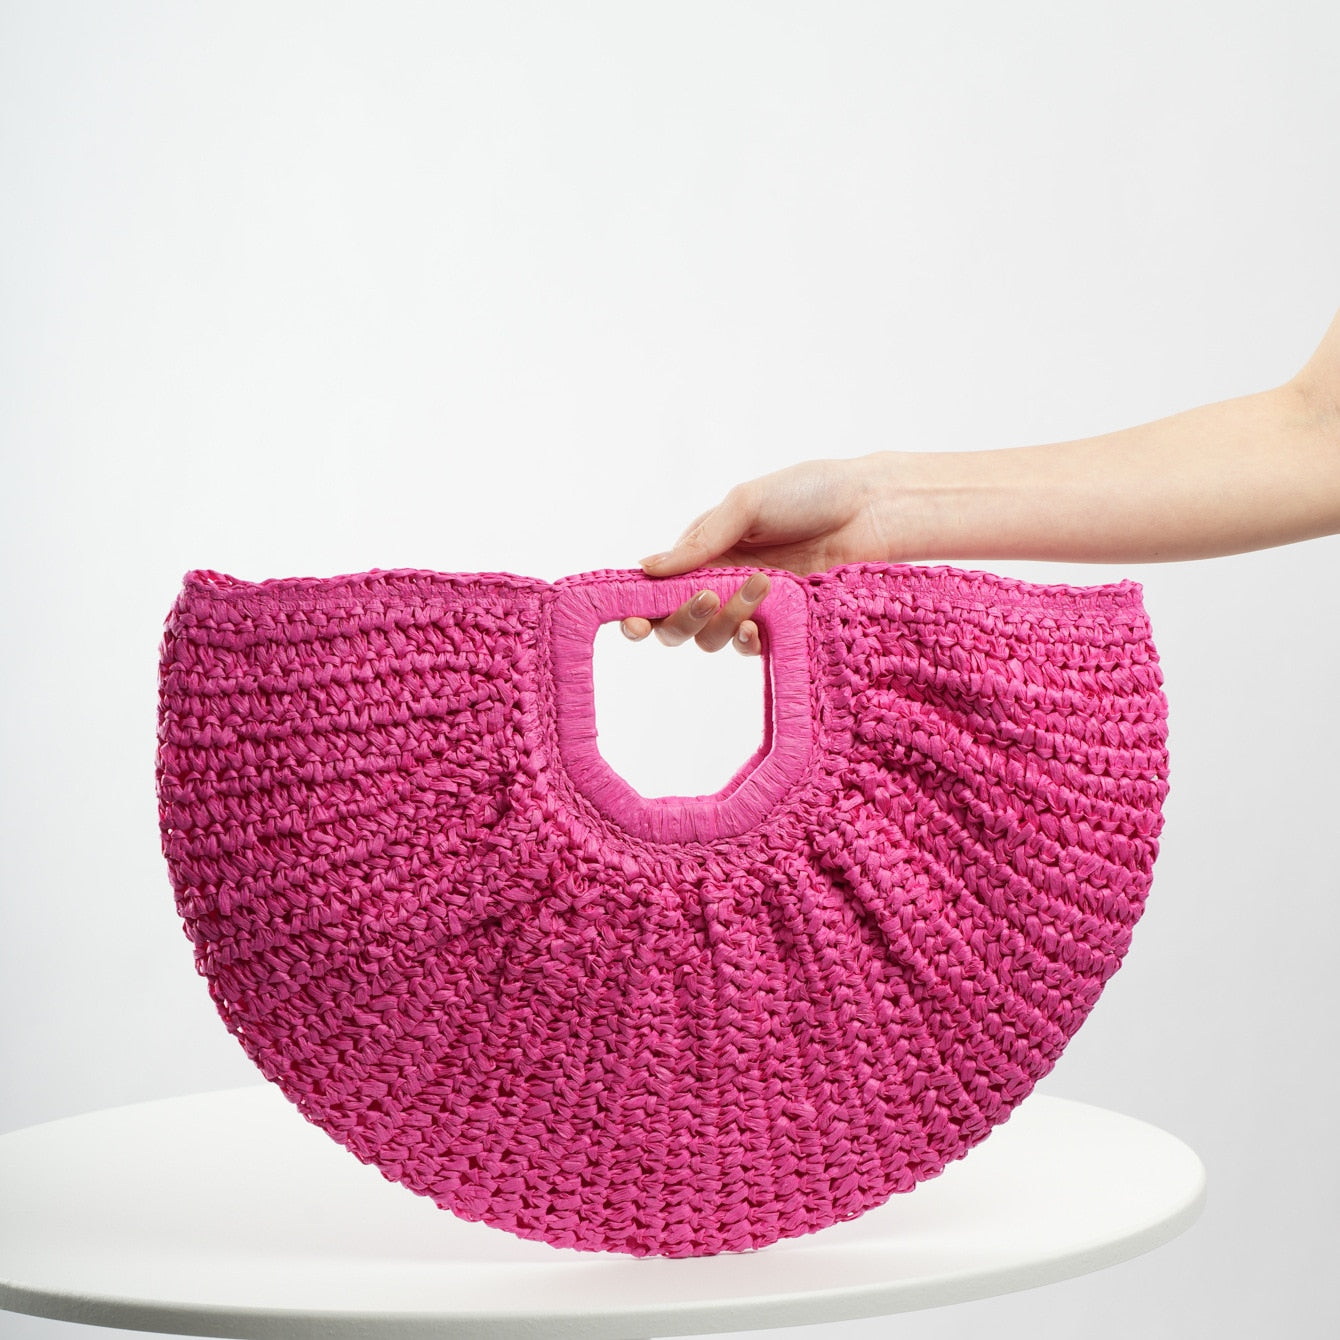 TEEK - Woven Straw Moon Handbag BAG theteekdotcom hot pink  